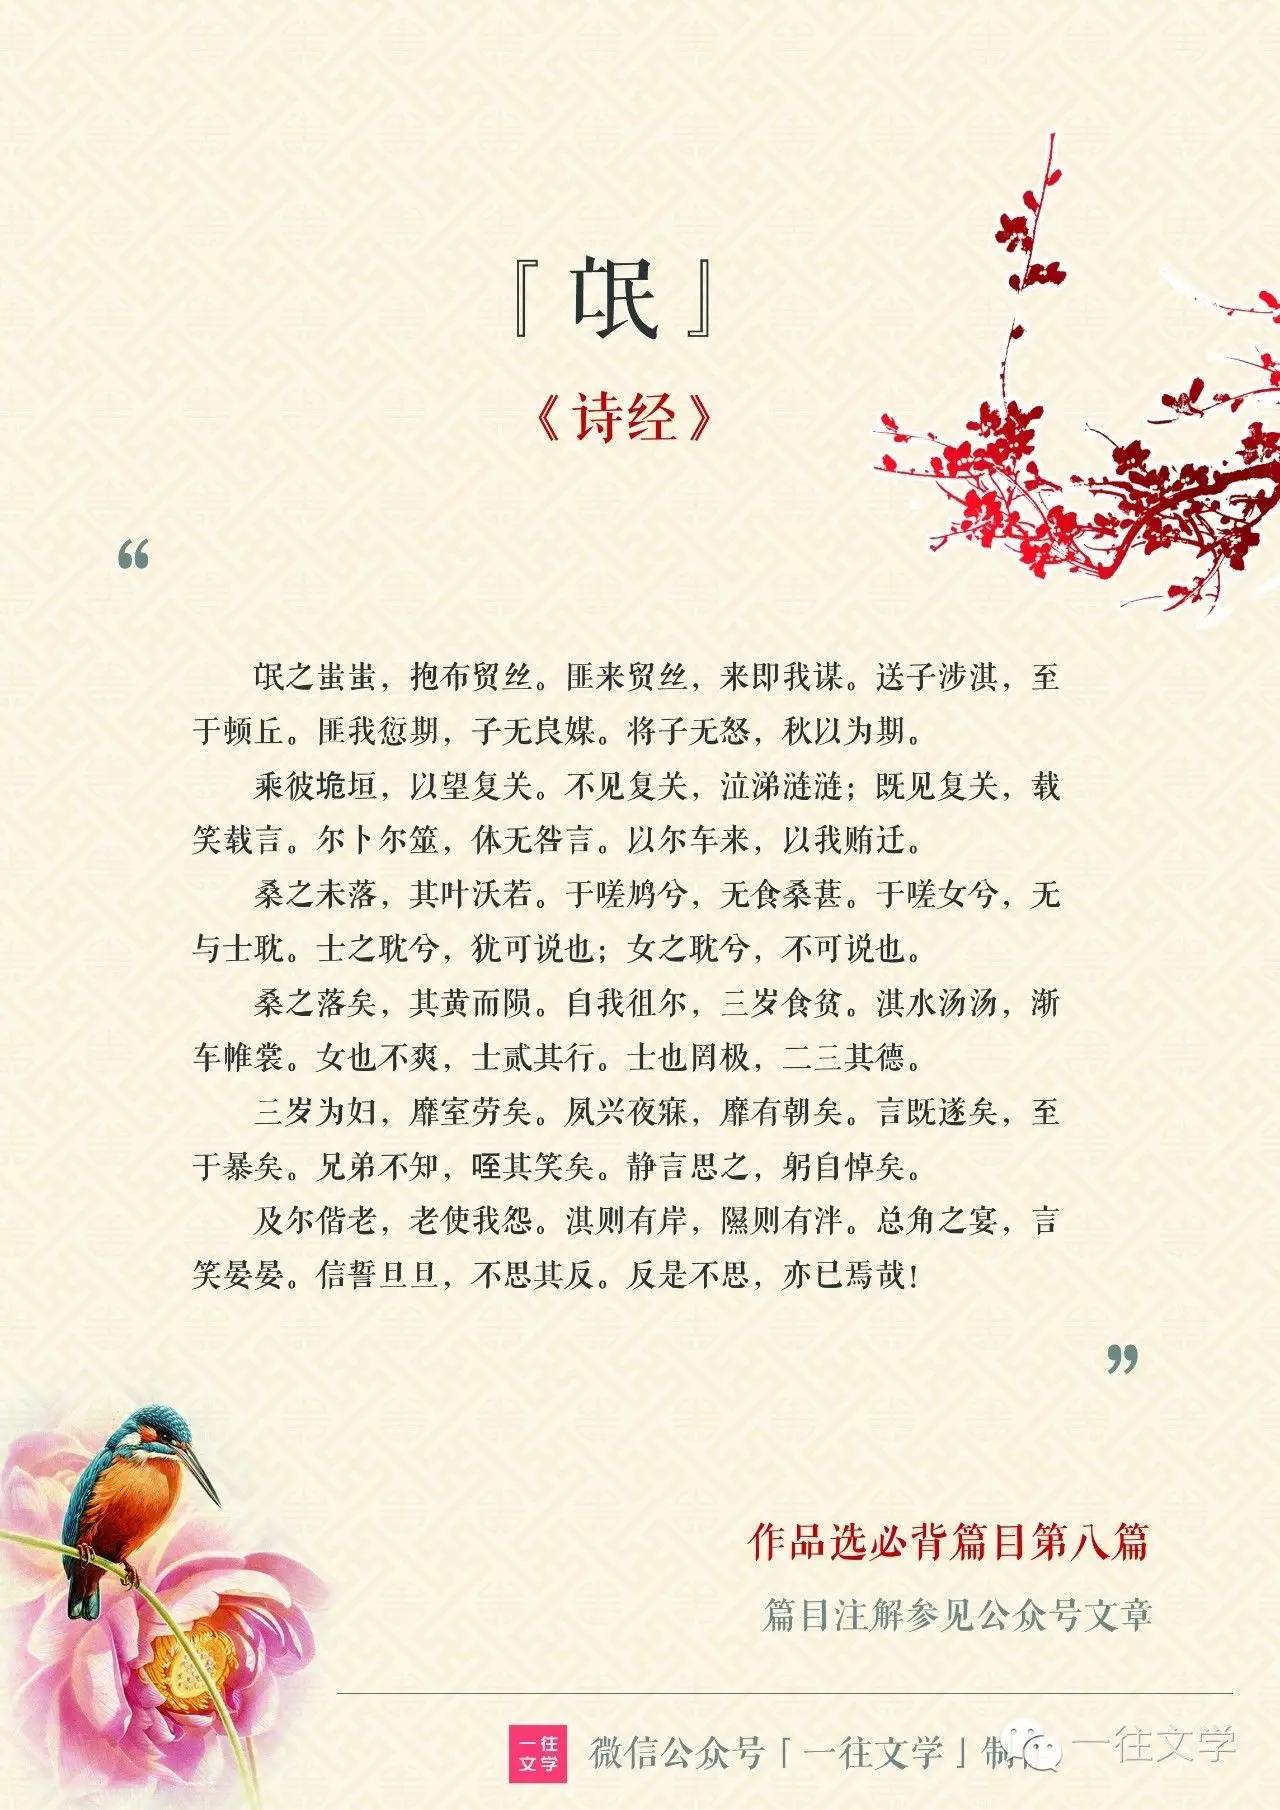 [第8篇] 中国最早的著名弃妇诗《氓》，作品内容分析